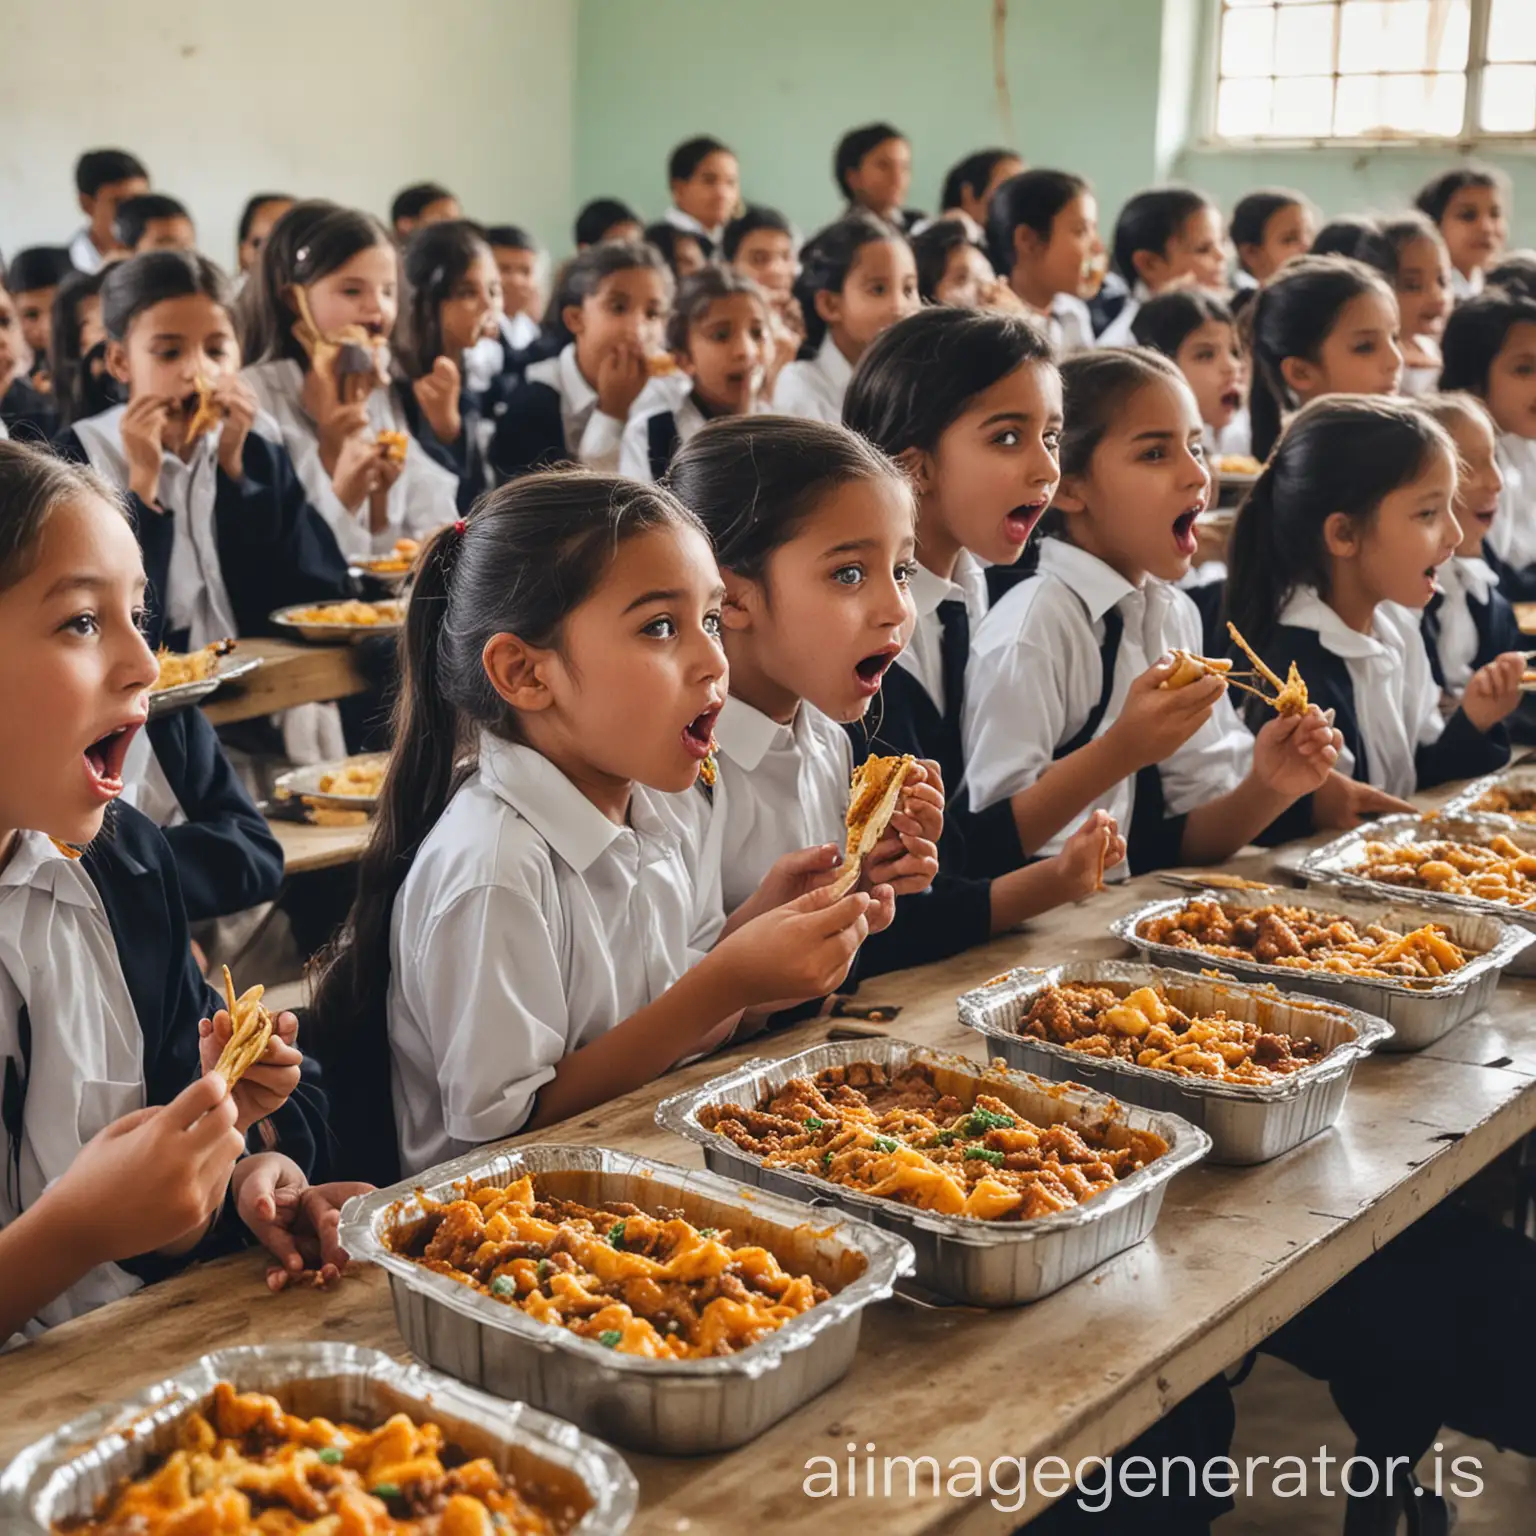 school kids enjoy eating hot home food at school